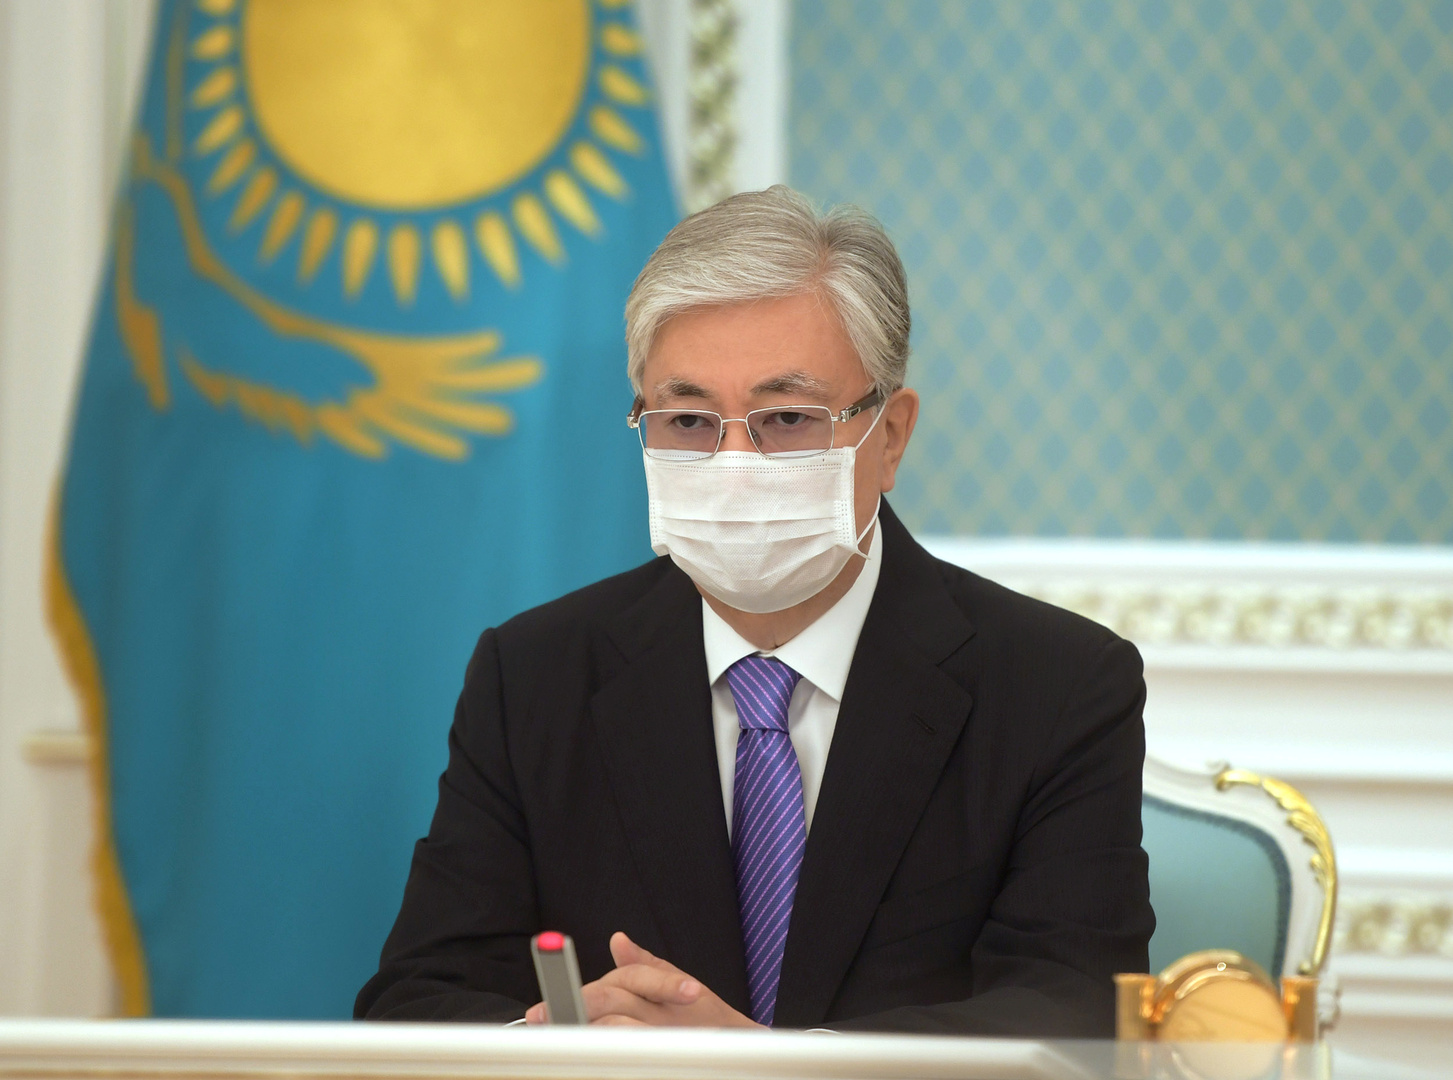 كازاخستان تحظر على الأجانب امتلاك أو استئجار الأراضي الزراعية